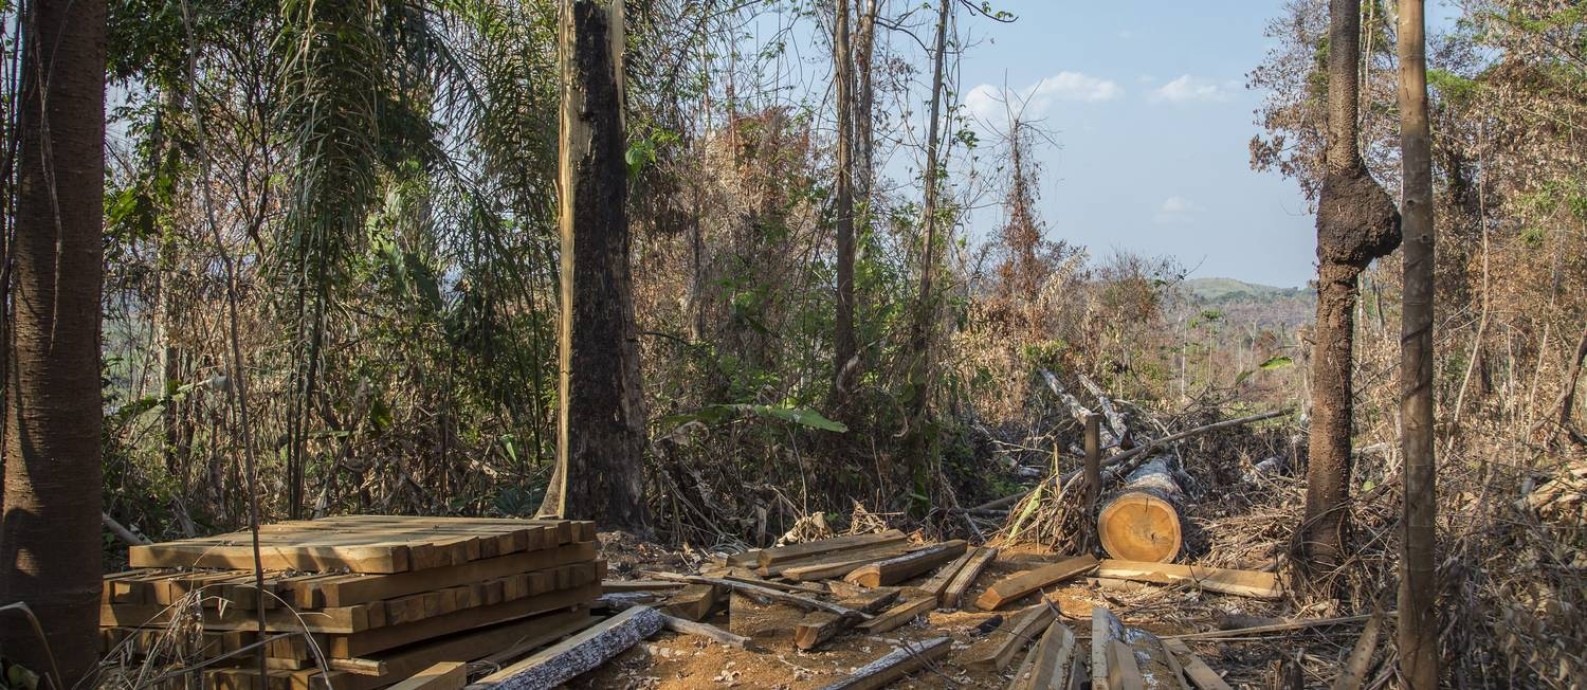 Desmatamento e queimadas consomem a floresta no município de Altamira, no Pará Foto: Edilson Dantas / Agência O Globo